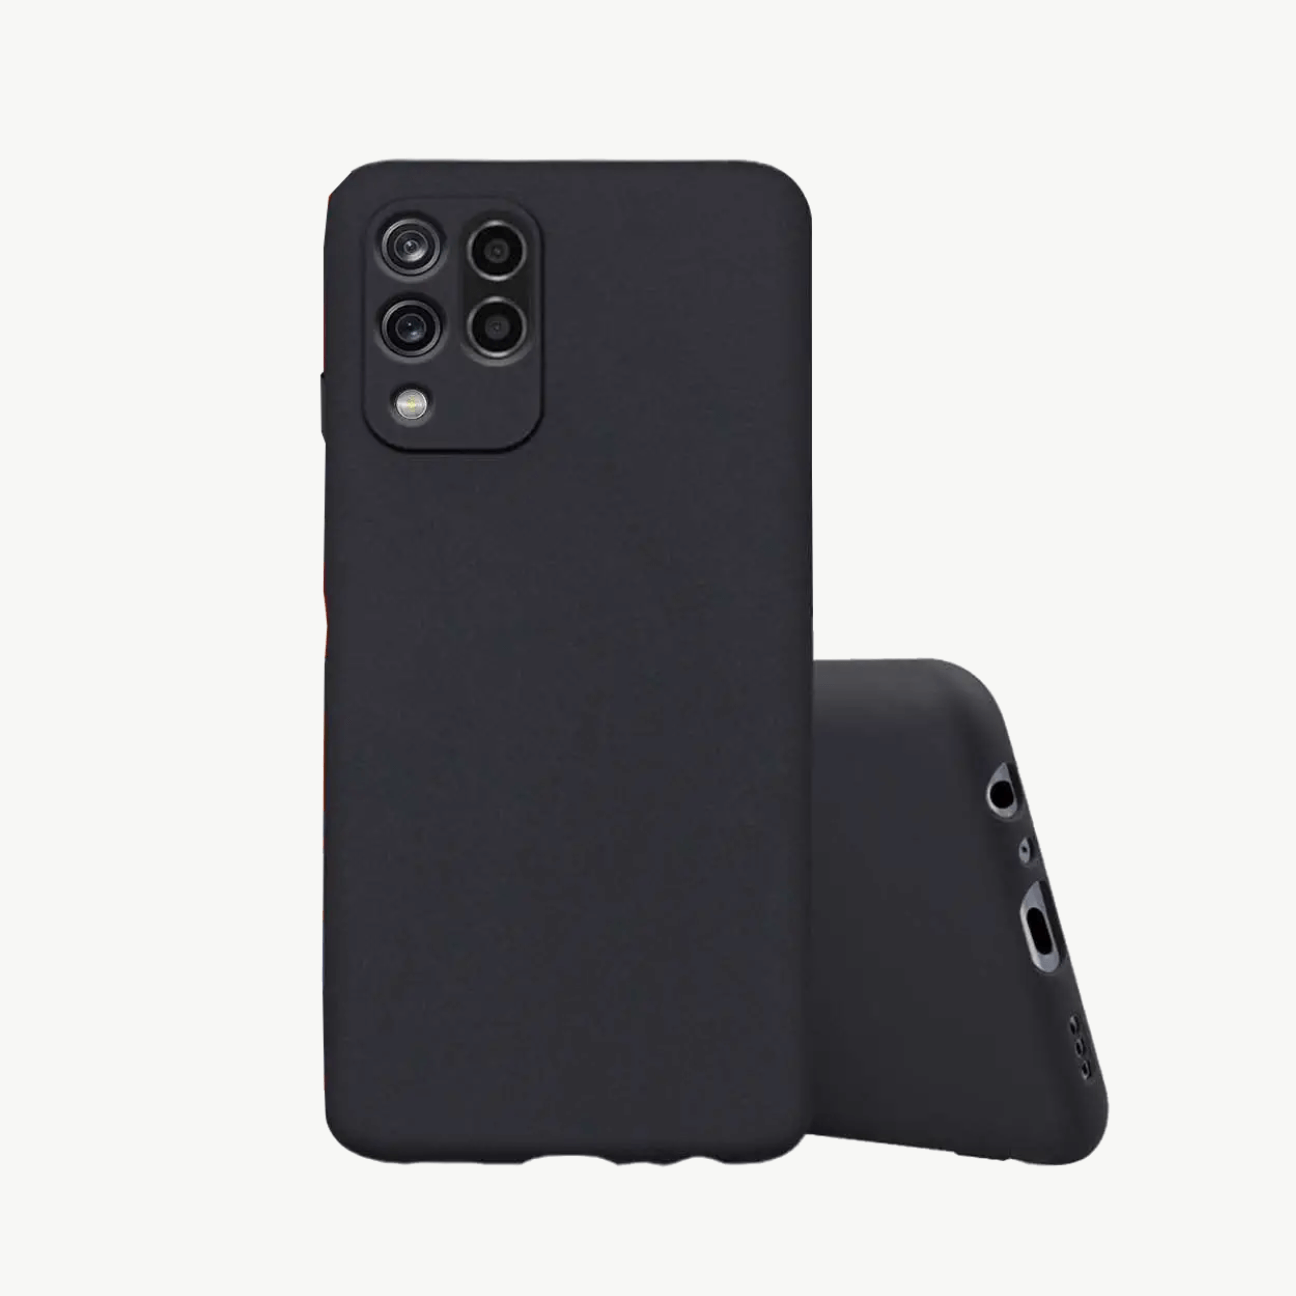 Xiaomi Redmi Note 9 (2020) Black Soft Silicone Phone Case Image